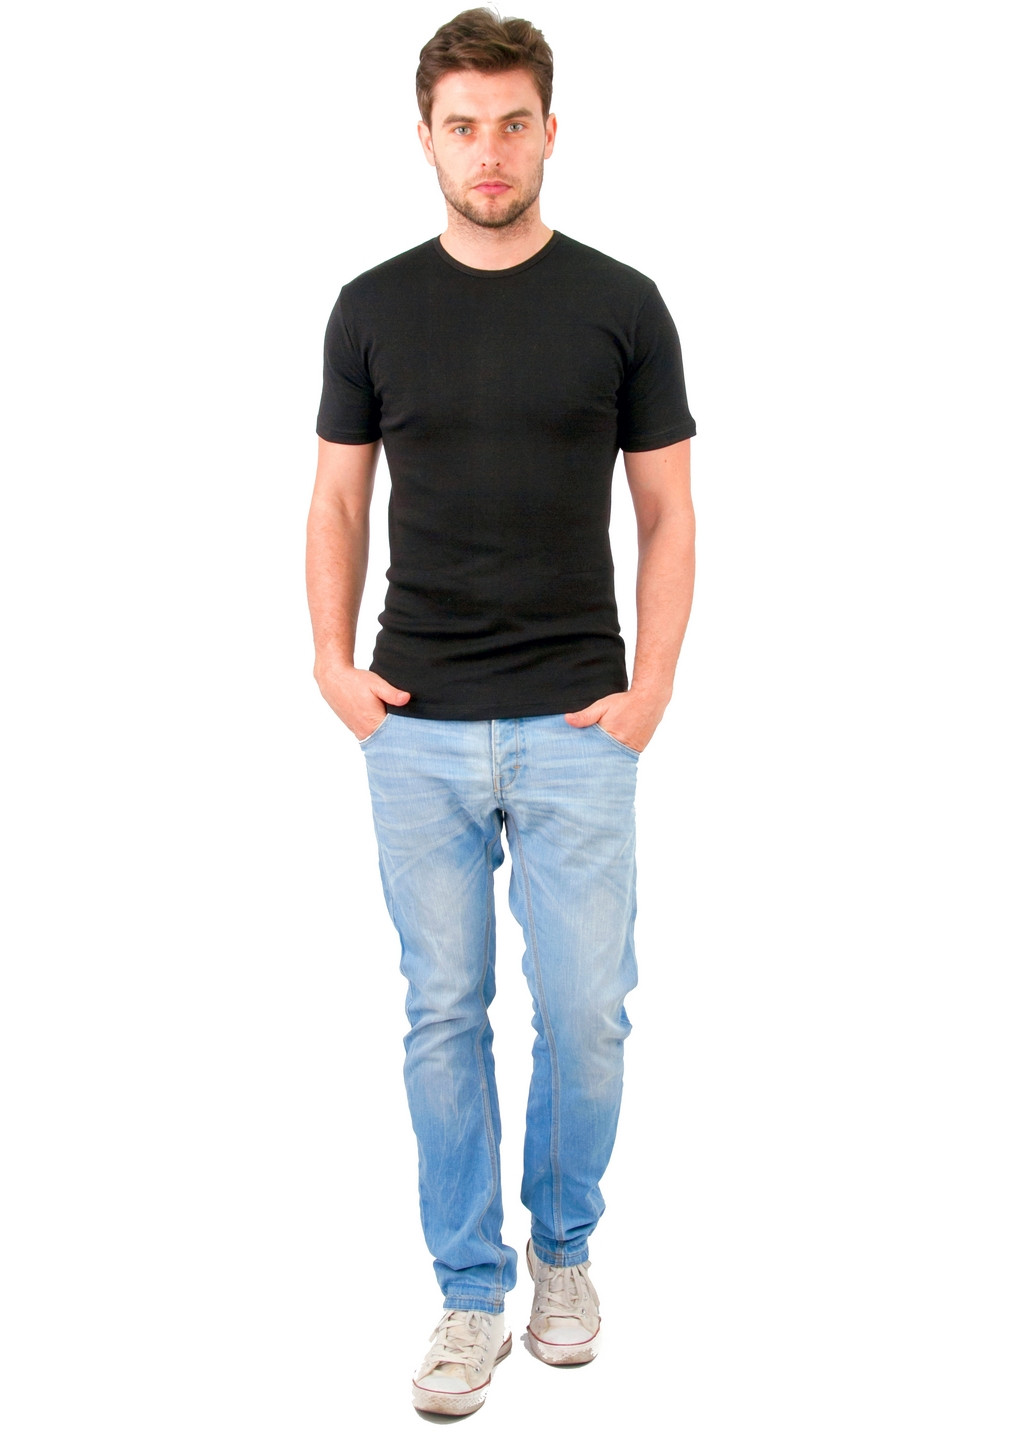 Черная футболка мужская Наталюкс 21-1302